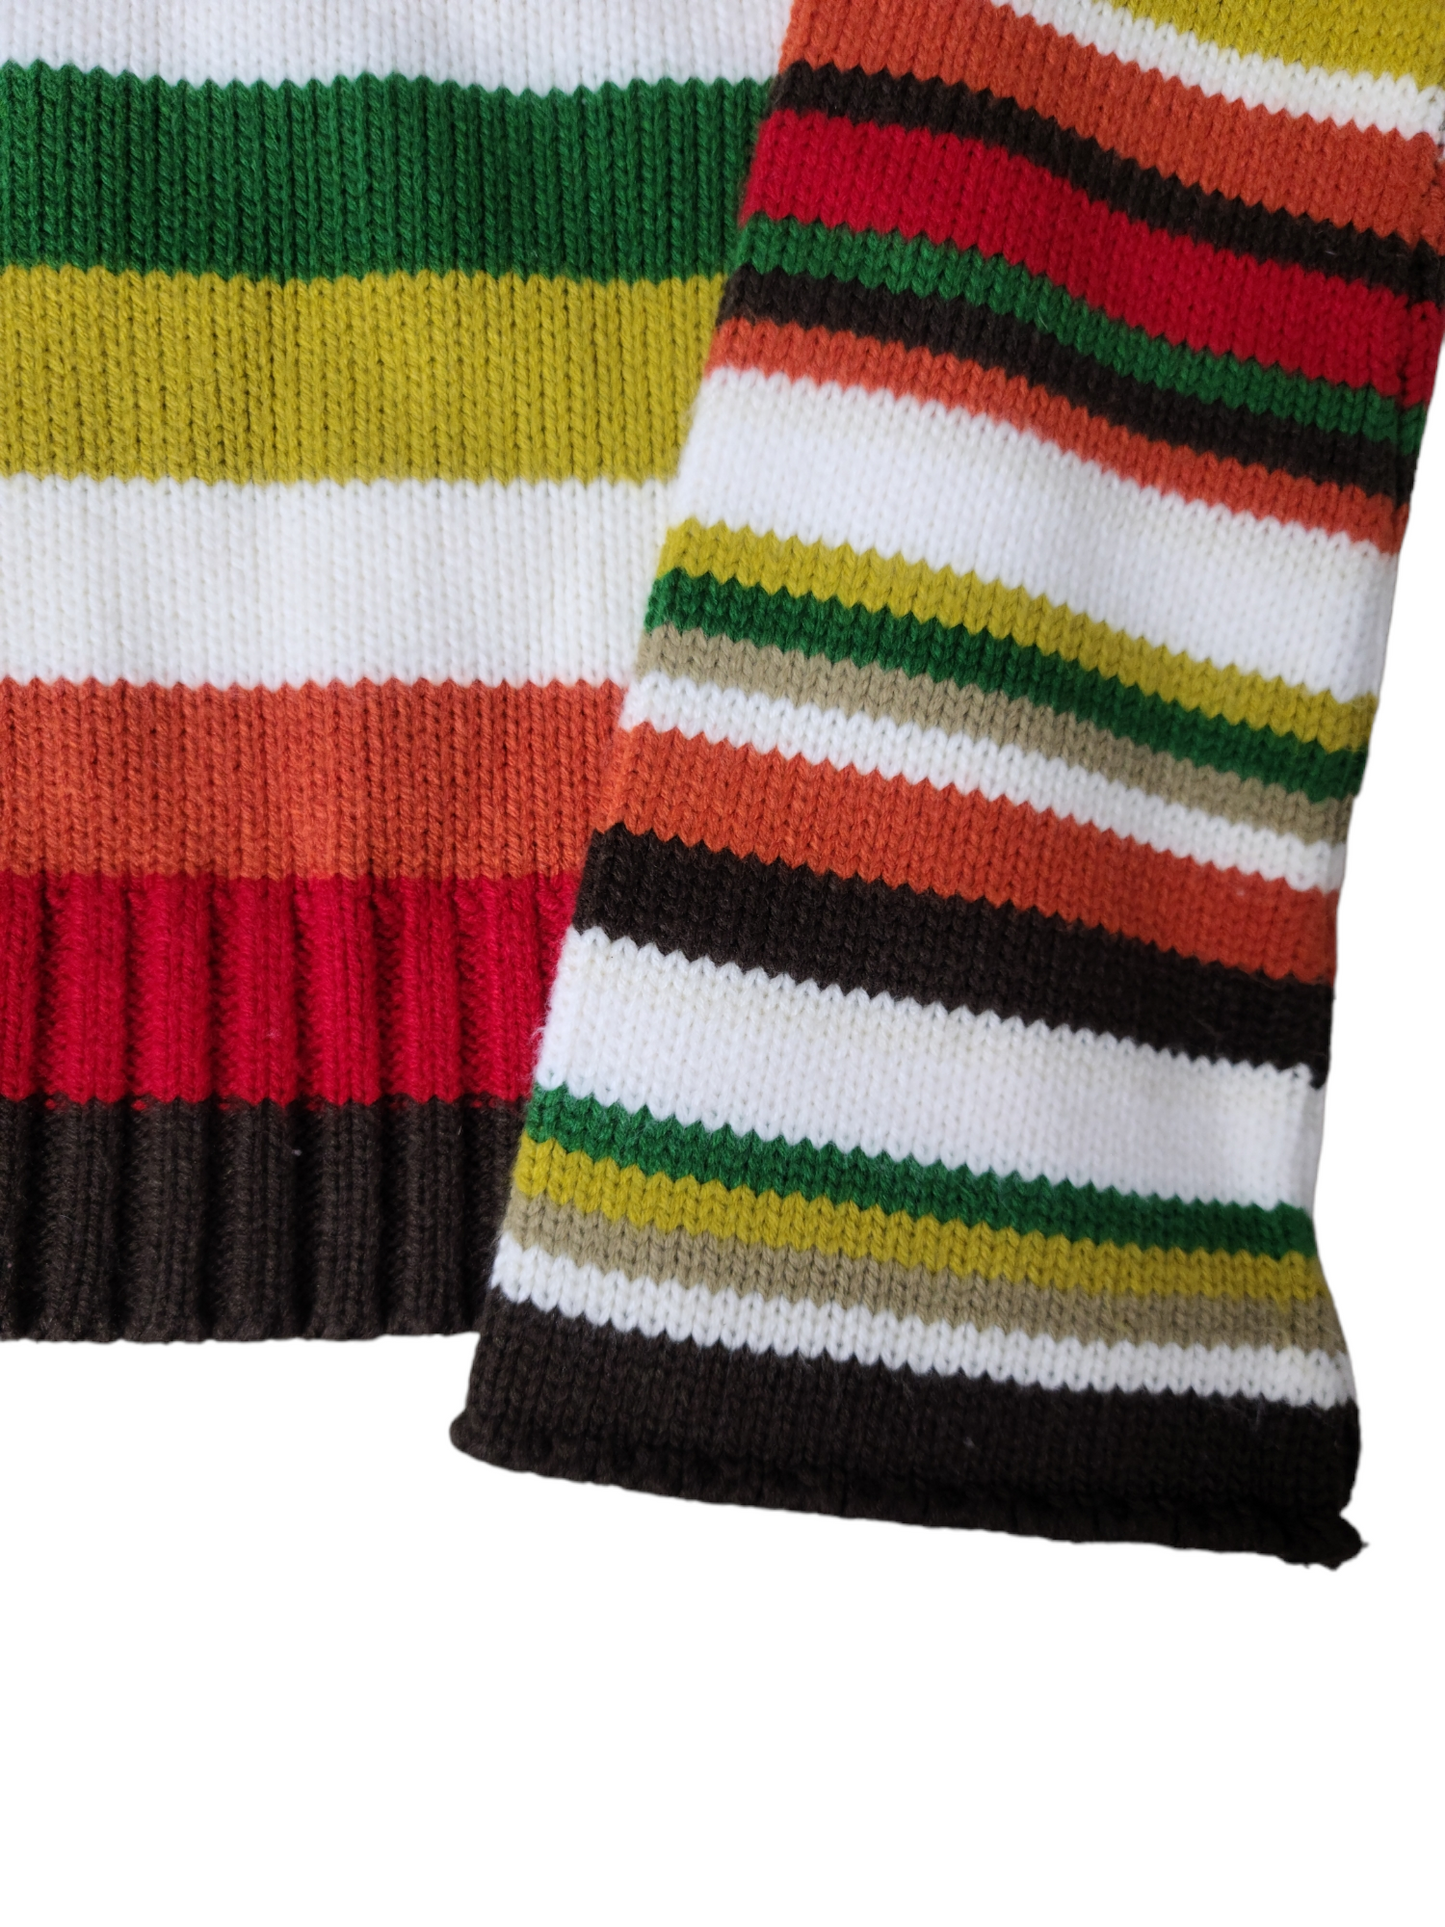 Pull crochet multicolore forestcore